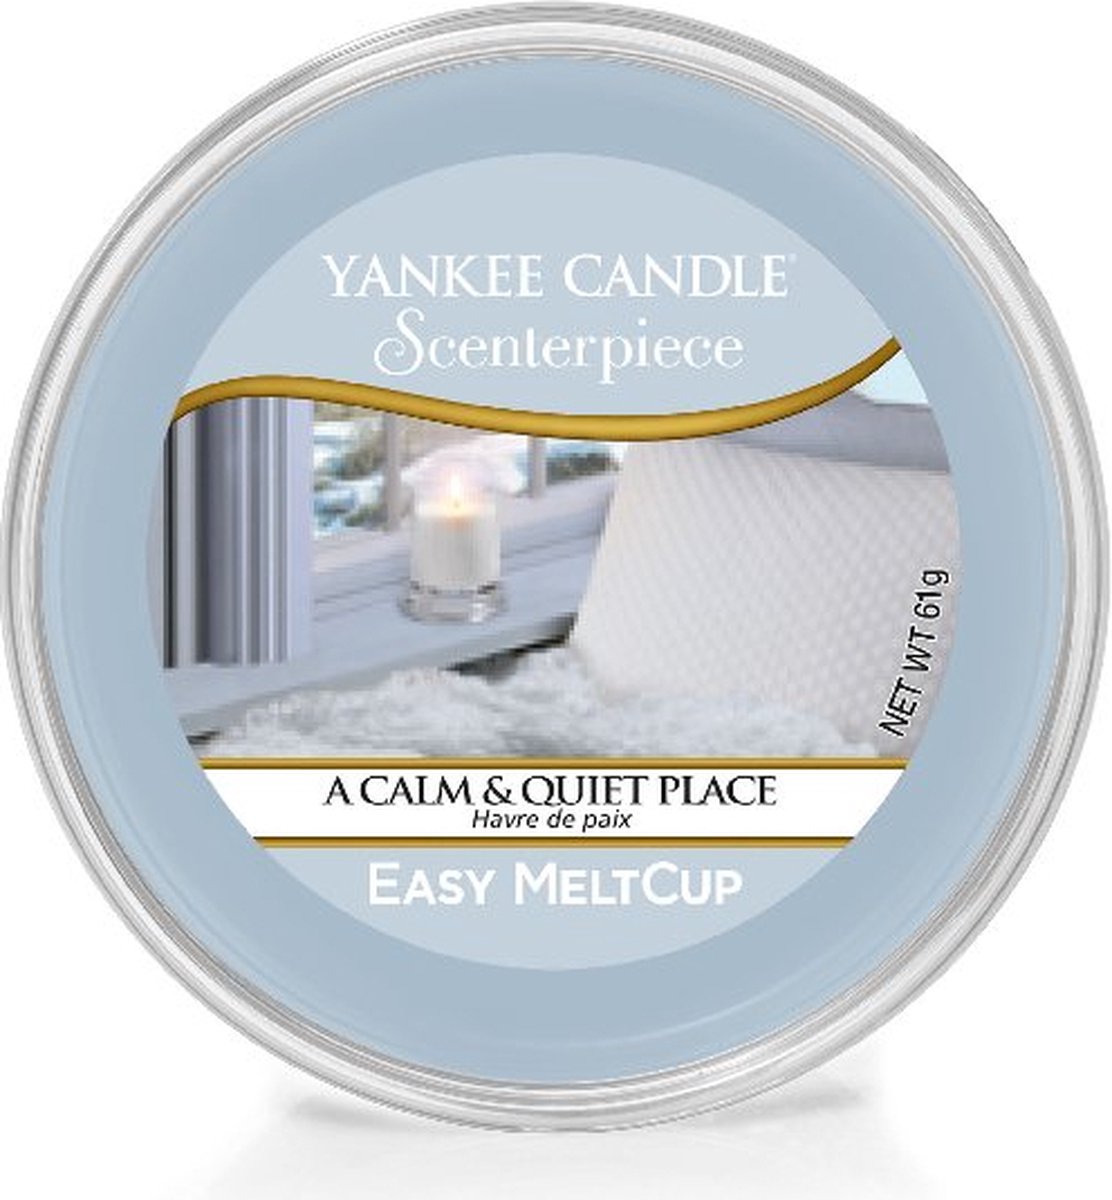 Yankee Candle - A Calm & Quiet Place Scenterpiece Easy MeltCup ( klidné a tiché místo ) - Vonný vosk do aromalampy - 61.0g